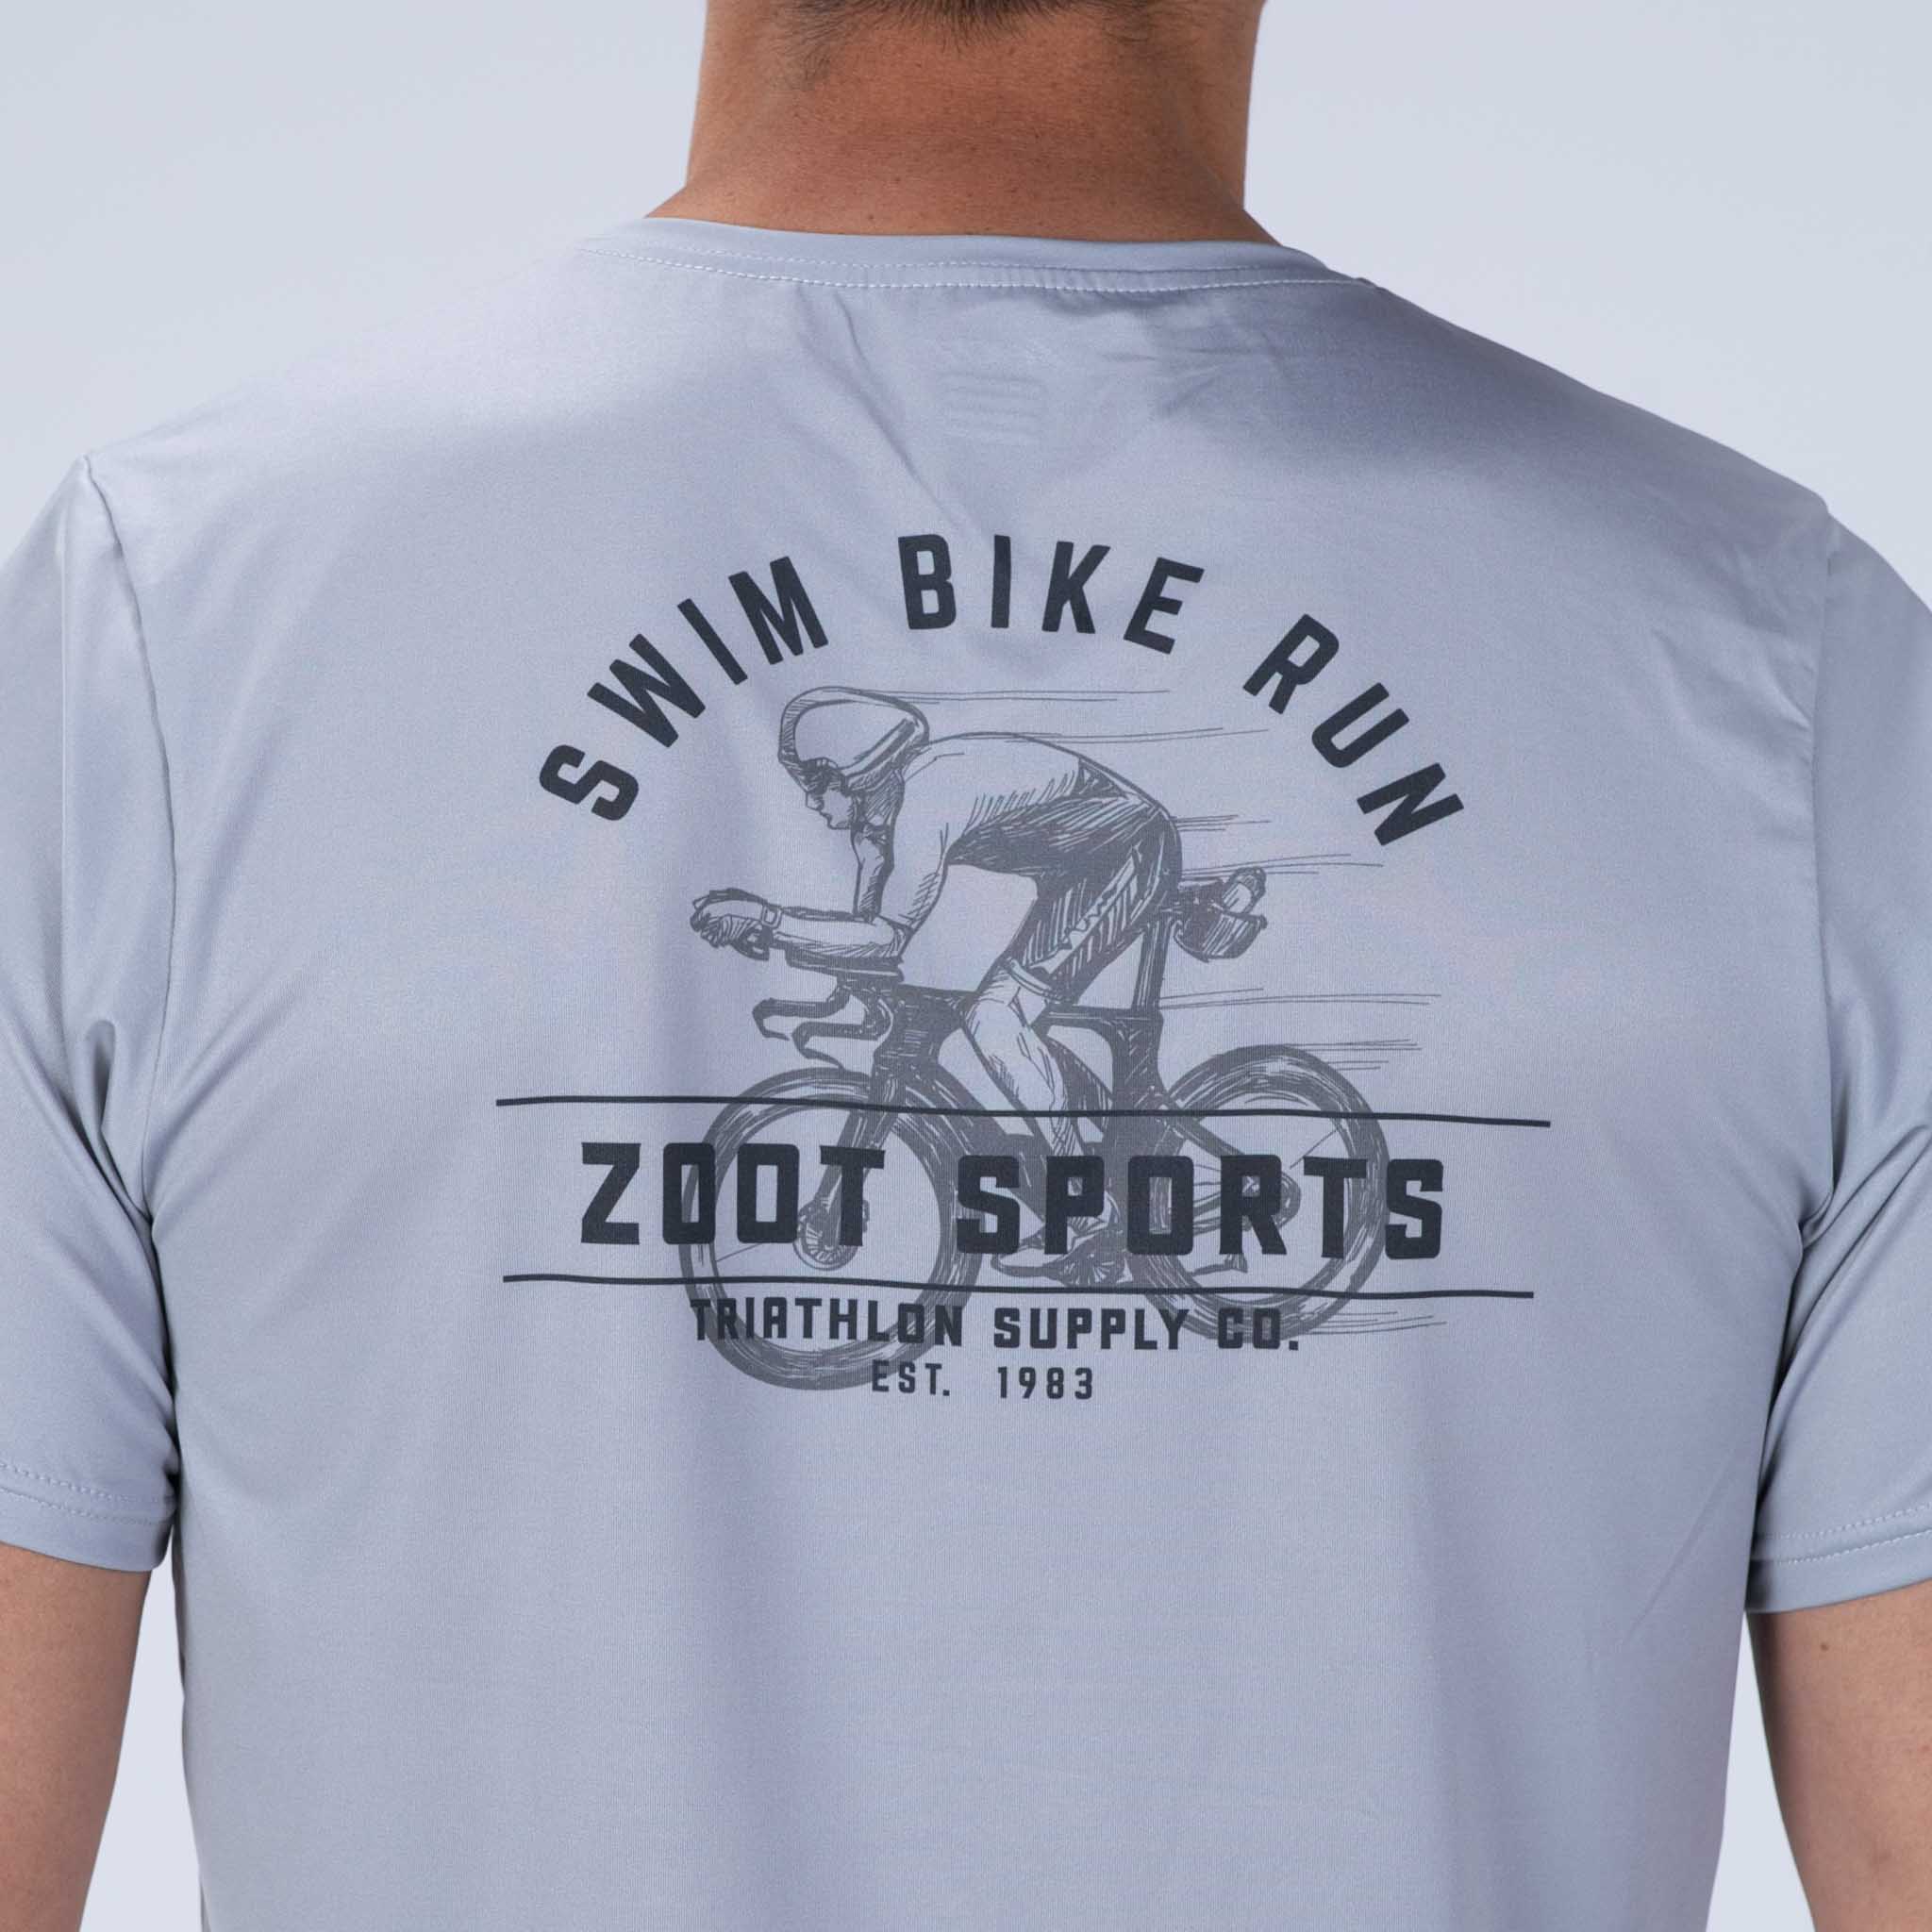 Zoot Sports RUN TEE Men's Ltd Run Tee - Tri Supply